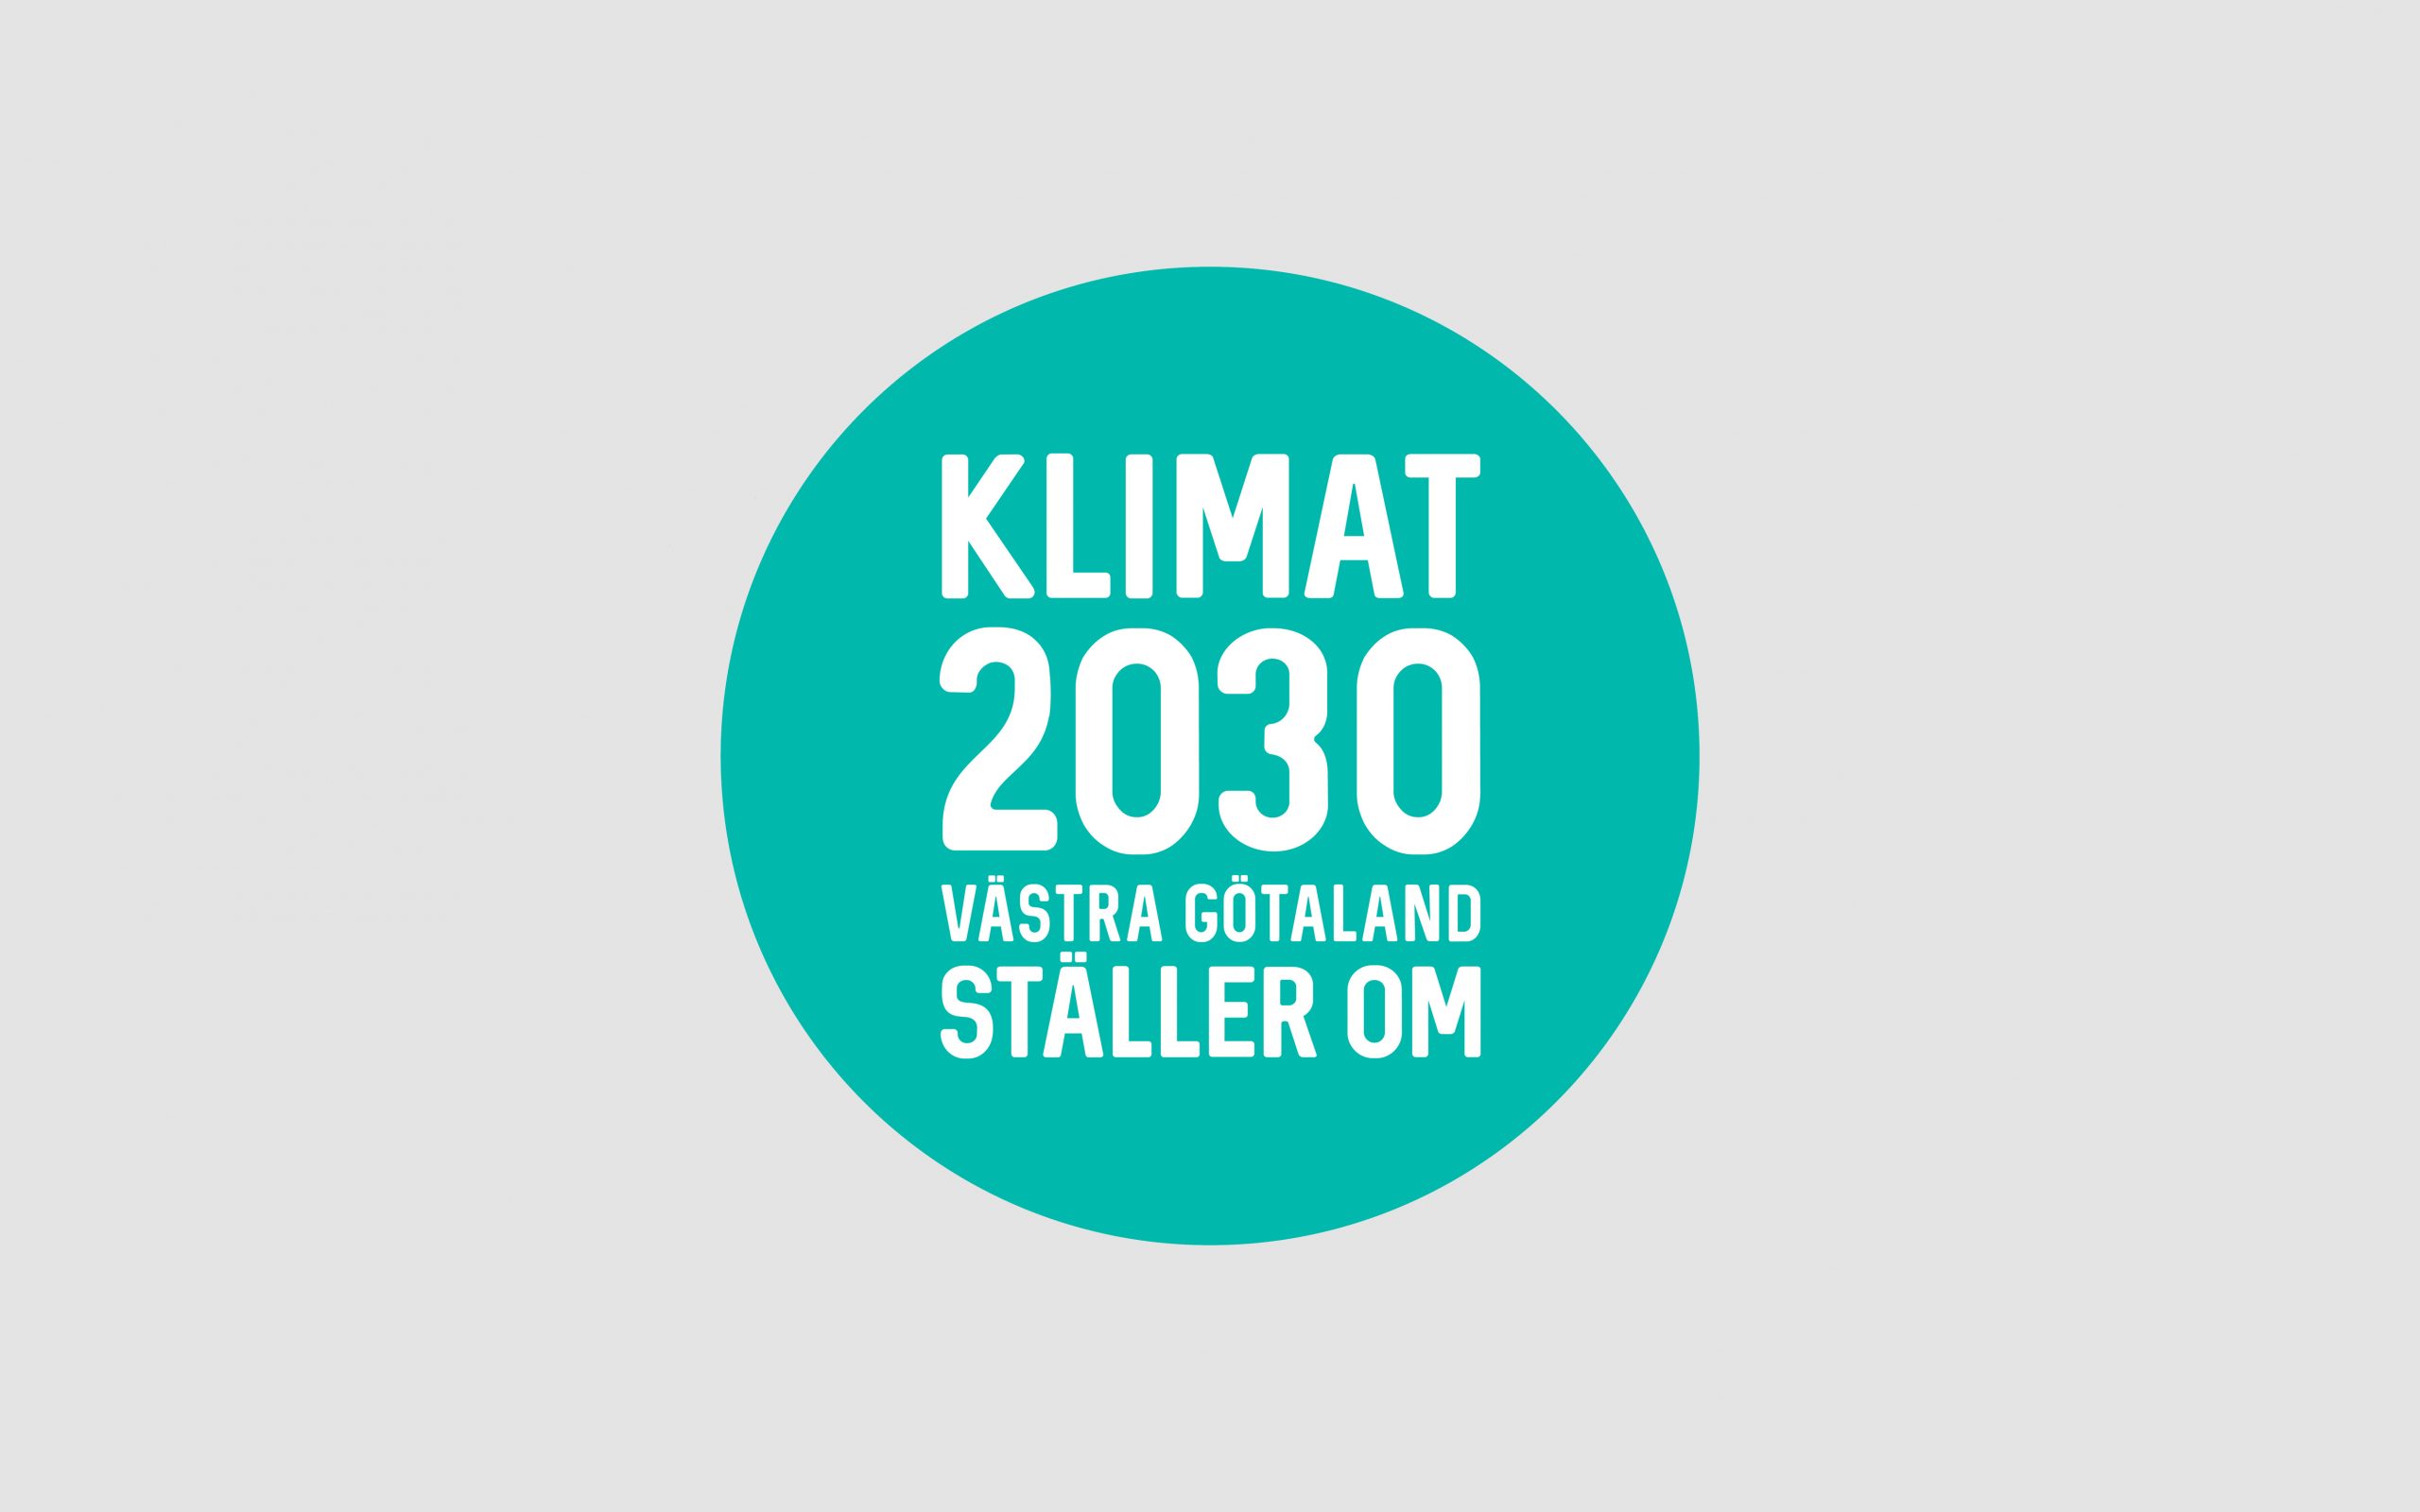 KLIMAT 2030 Västra Götaland ställer om